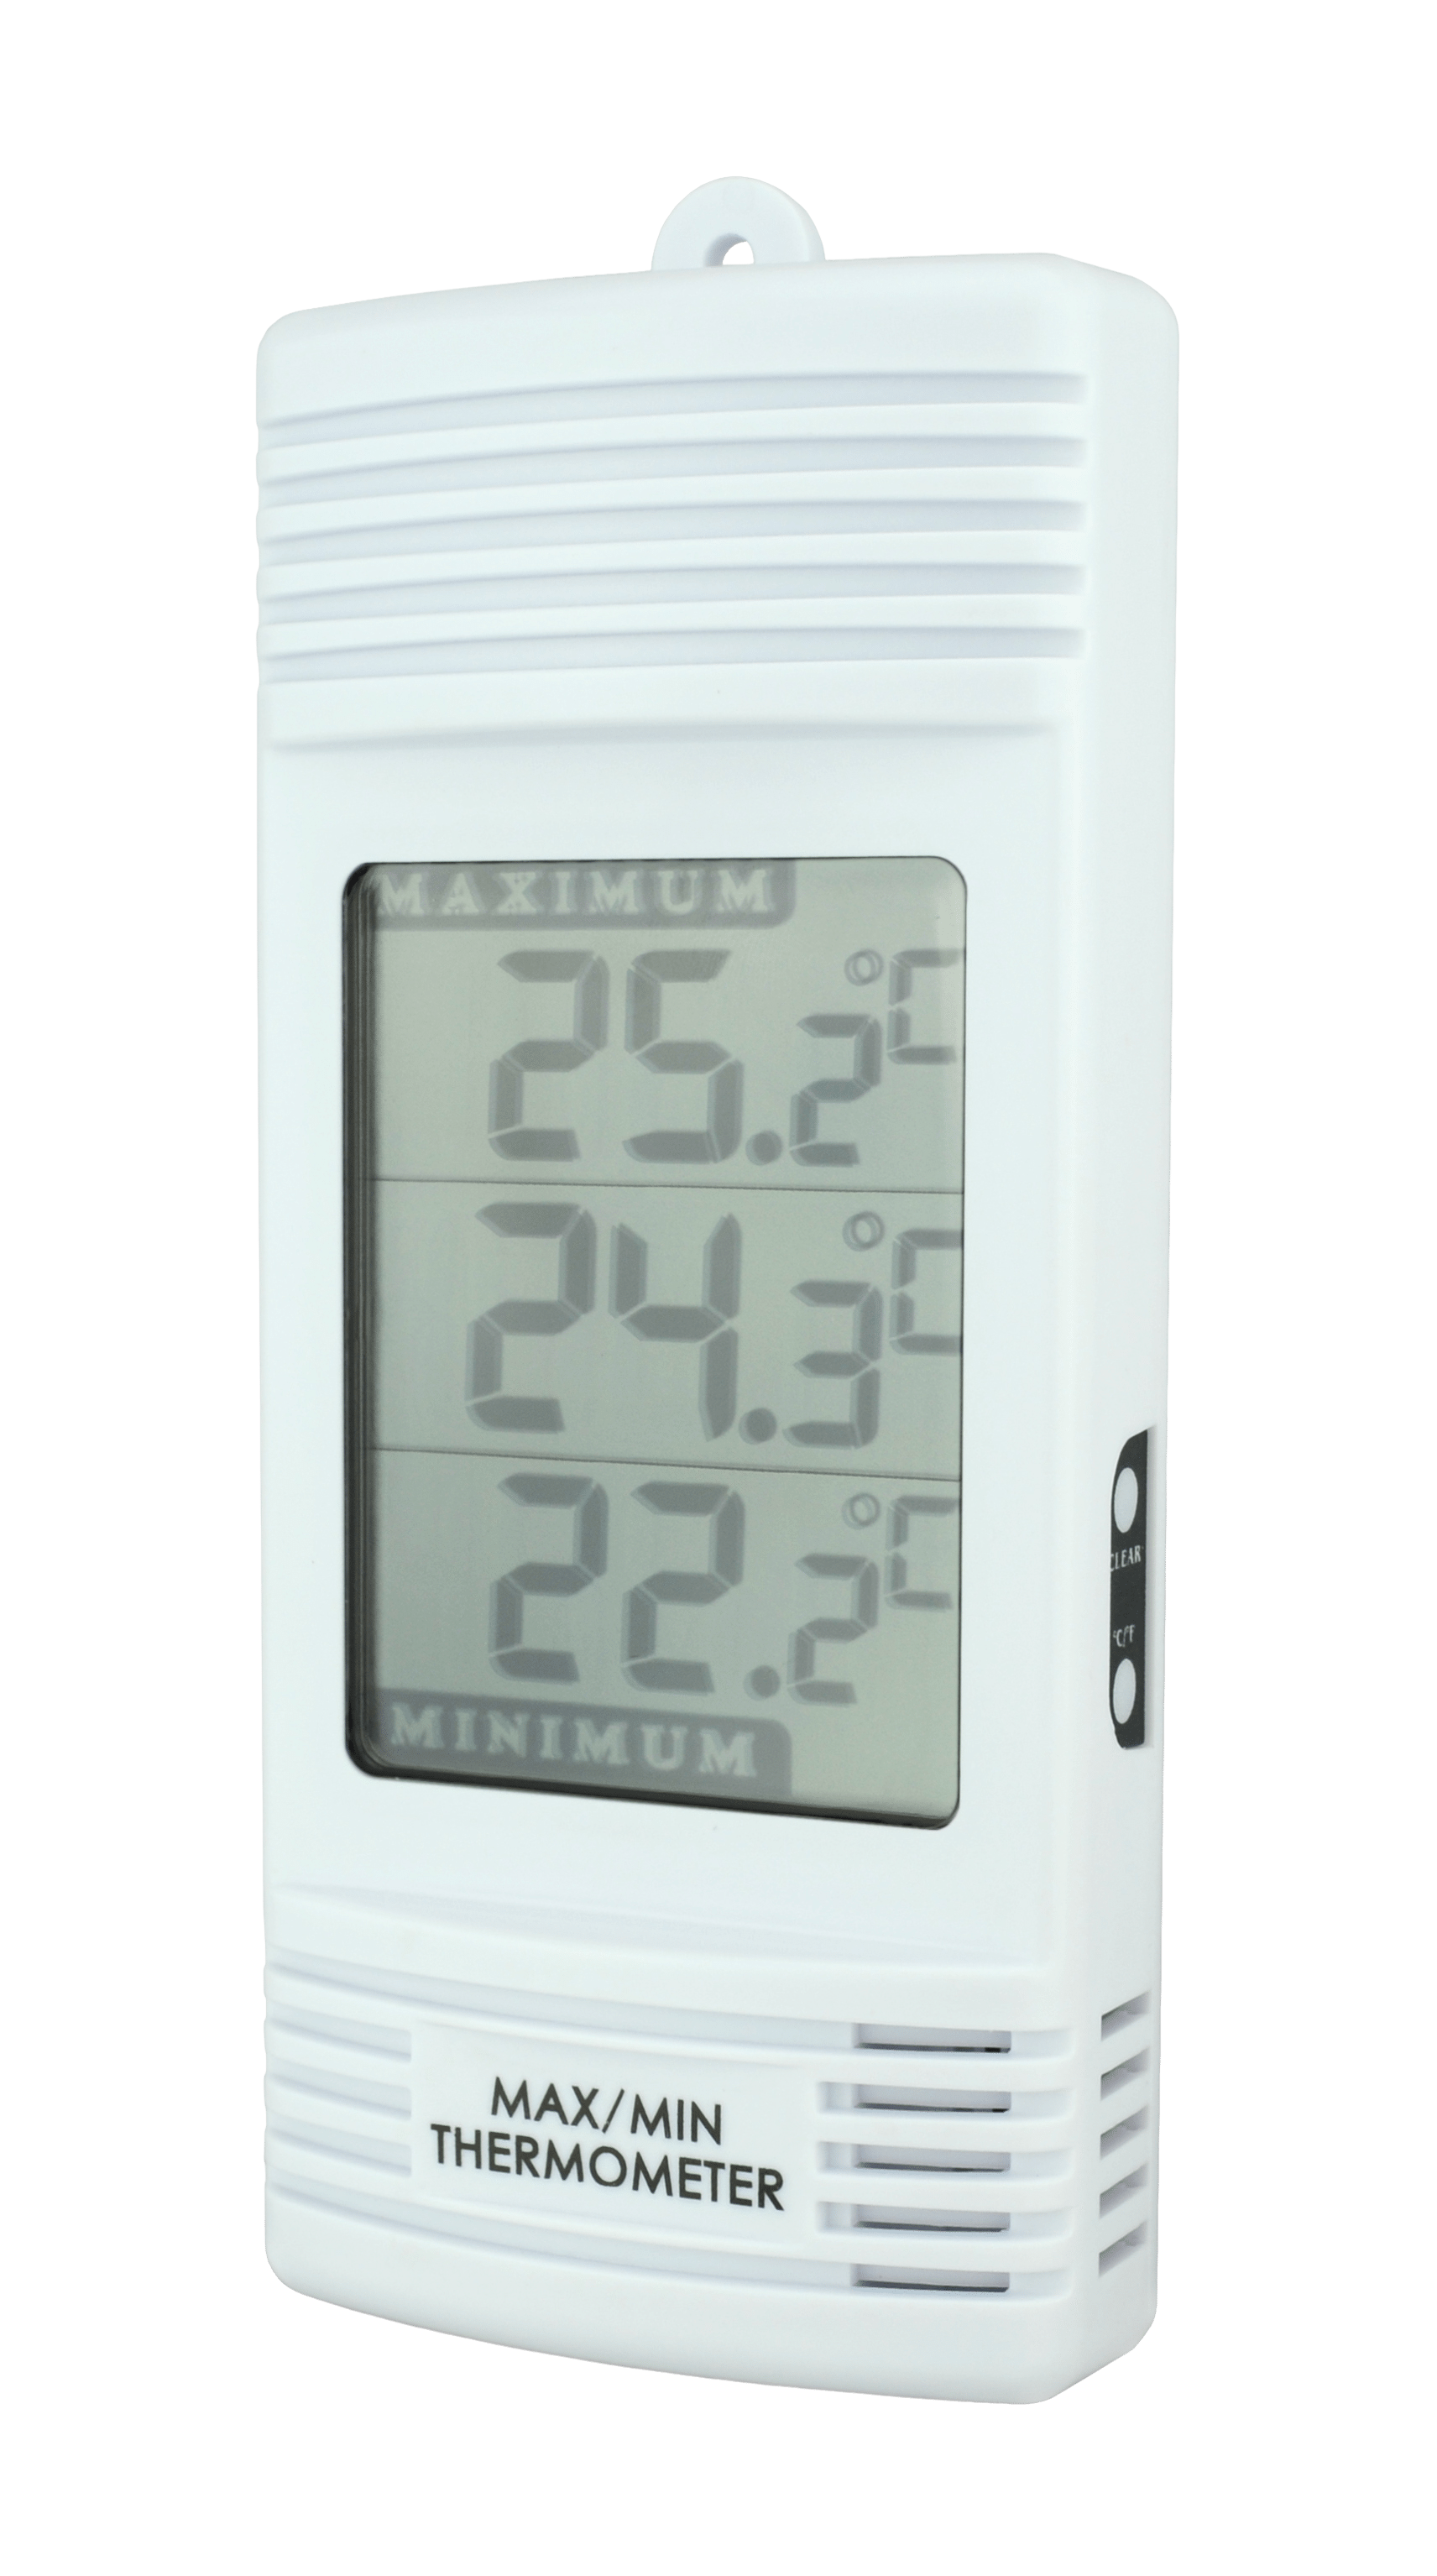 Thermomètres de maison : leurs utilités